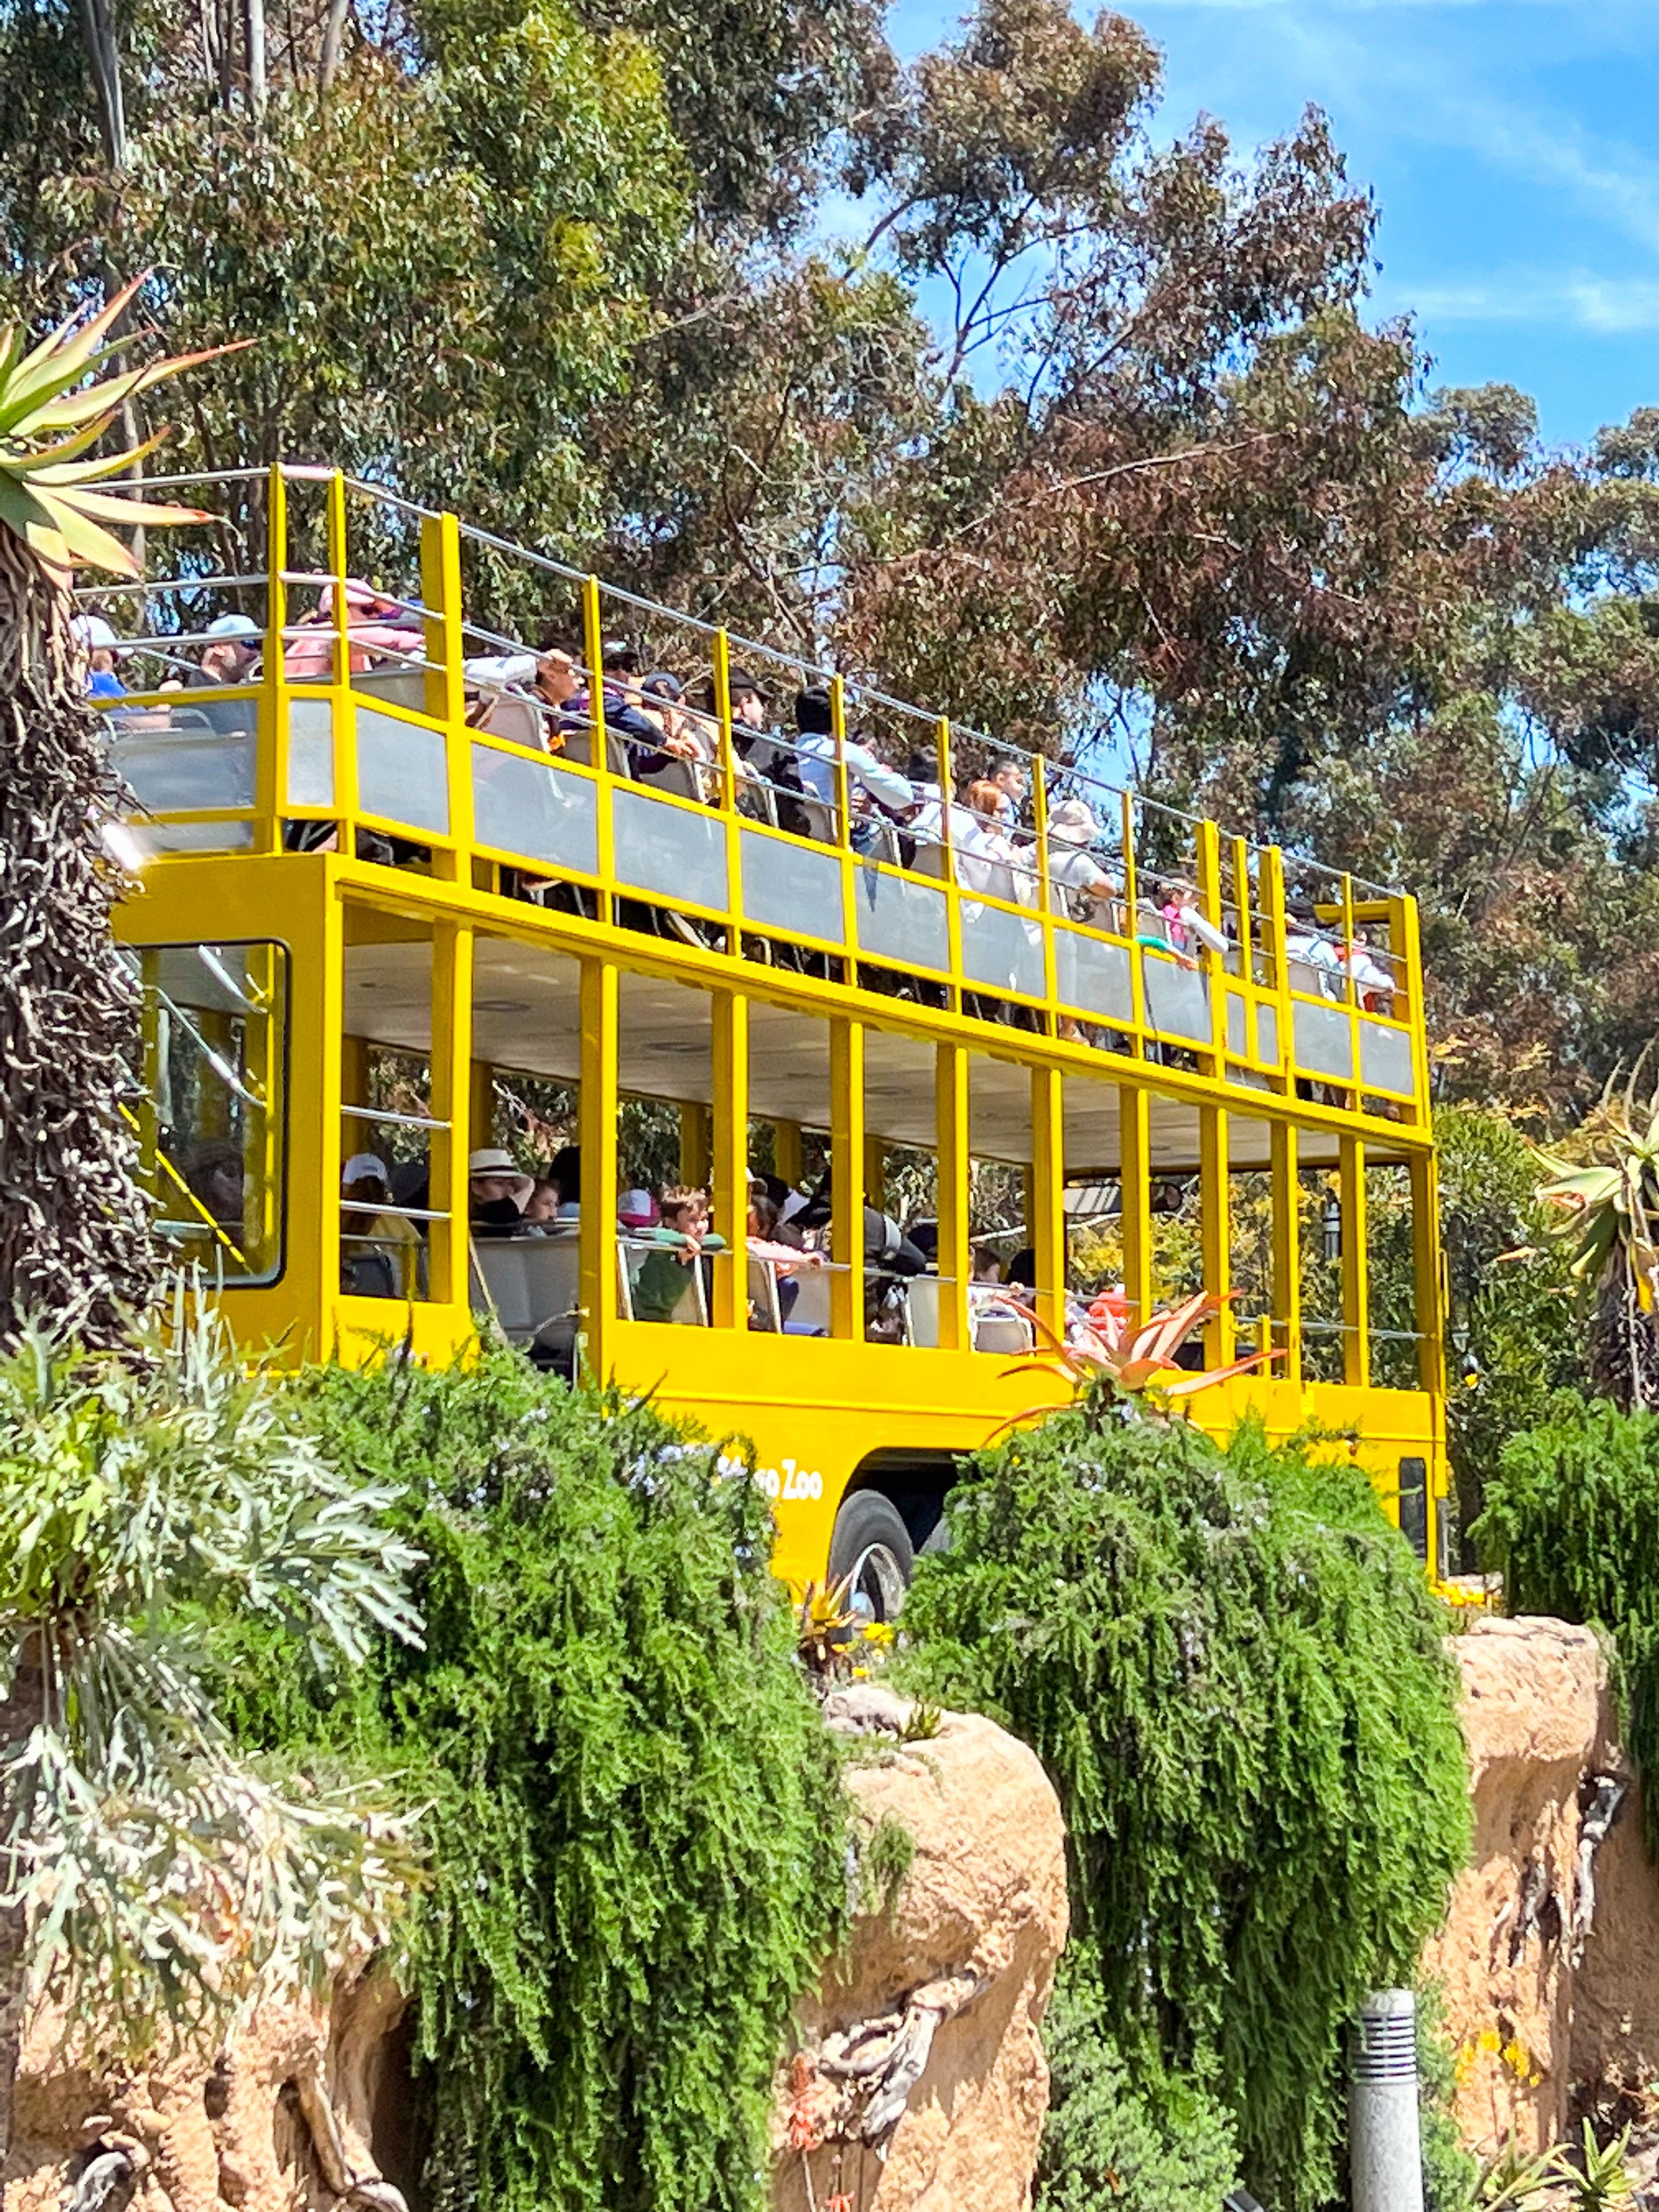 San Diego Zoo free bus tour.jpg